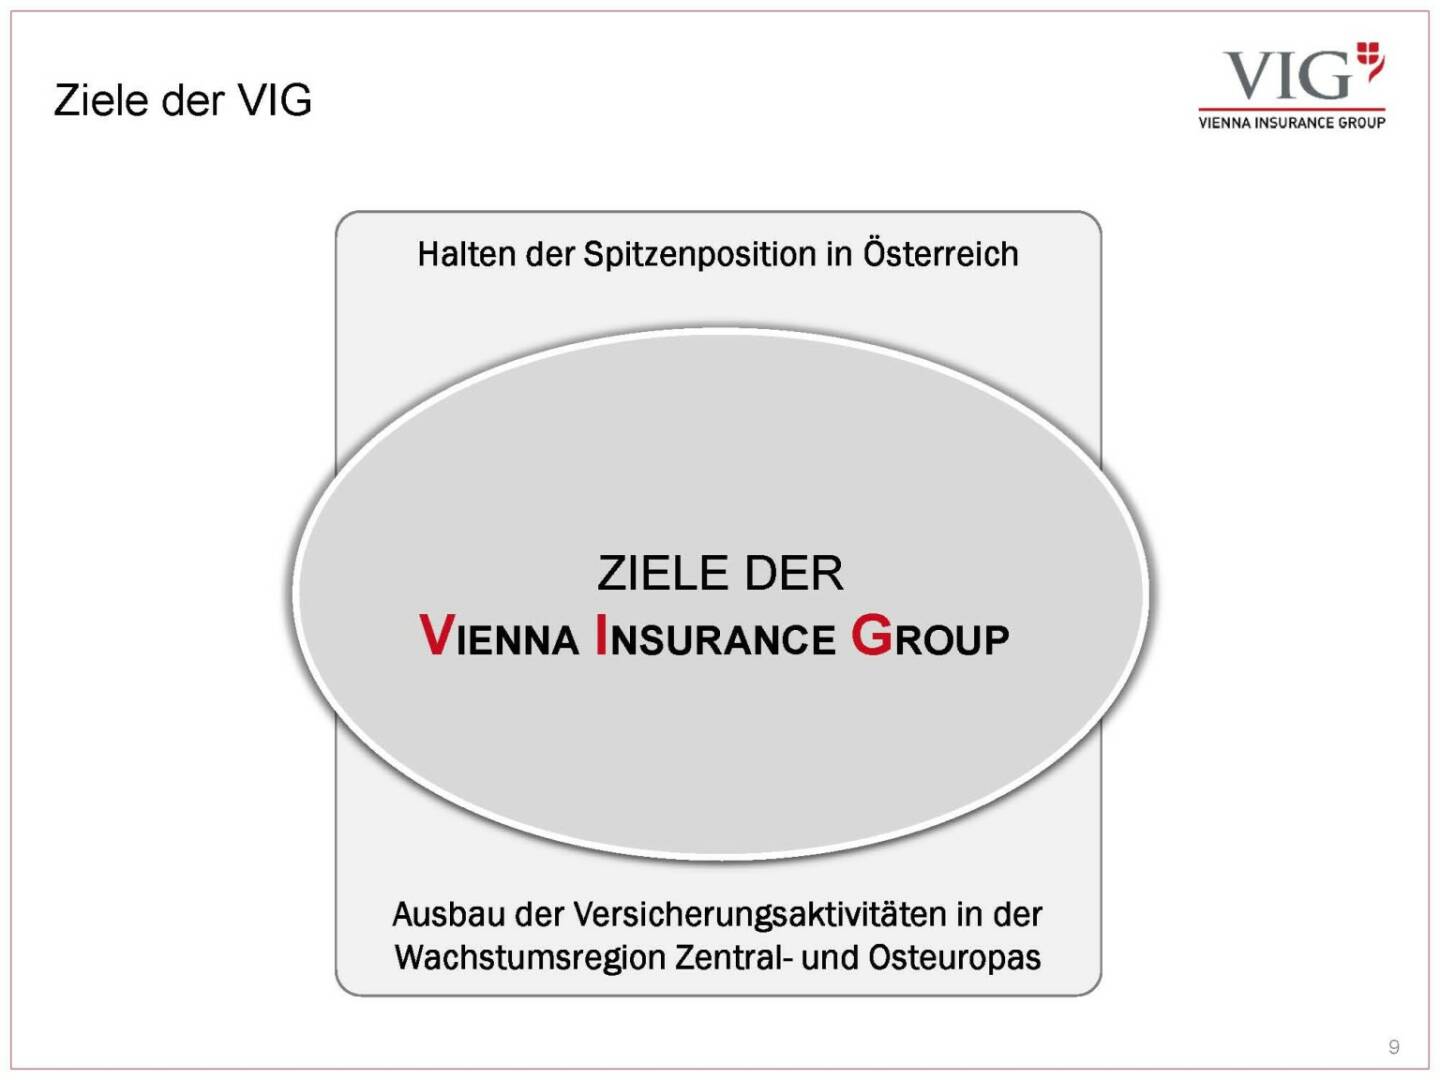 Vienna Insurance Group - Ziele der VIG